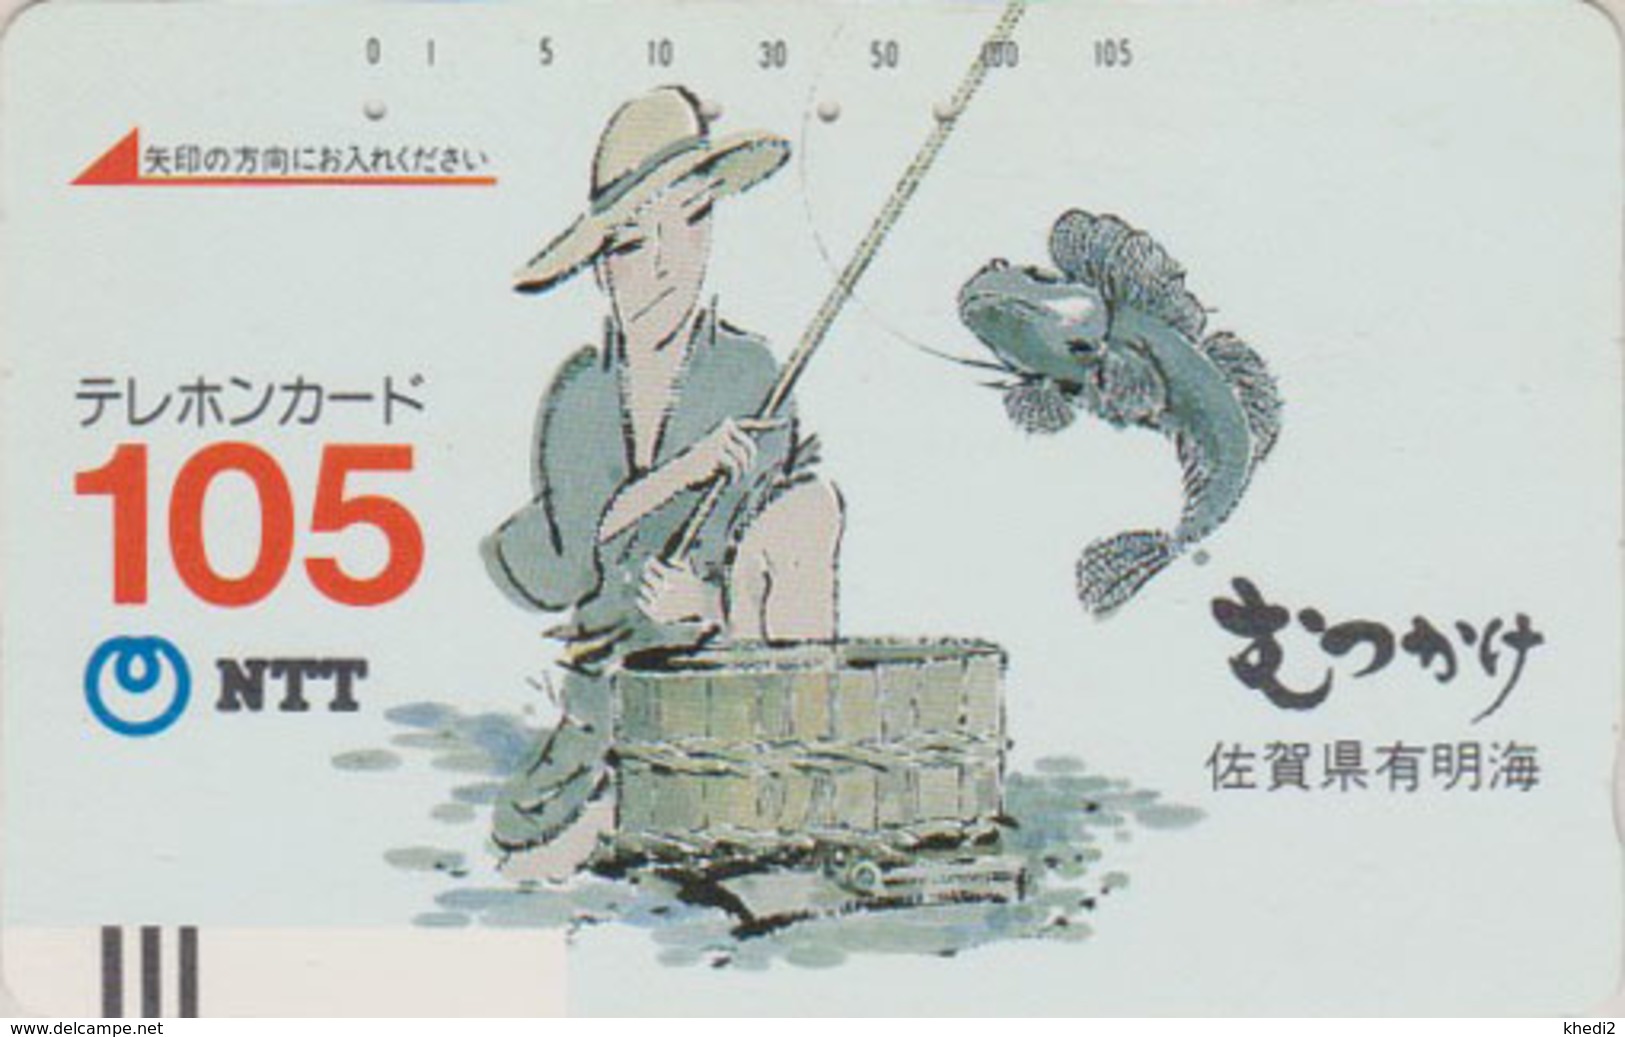 Télécarte Ancienne JAPON / NTT 390-035 - Peinture - Pêcheur Poisson TBE - FISH Angler JAPAN Front Bar Phonecard - Japan